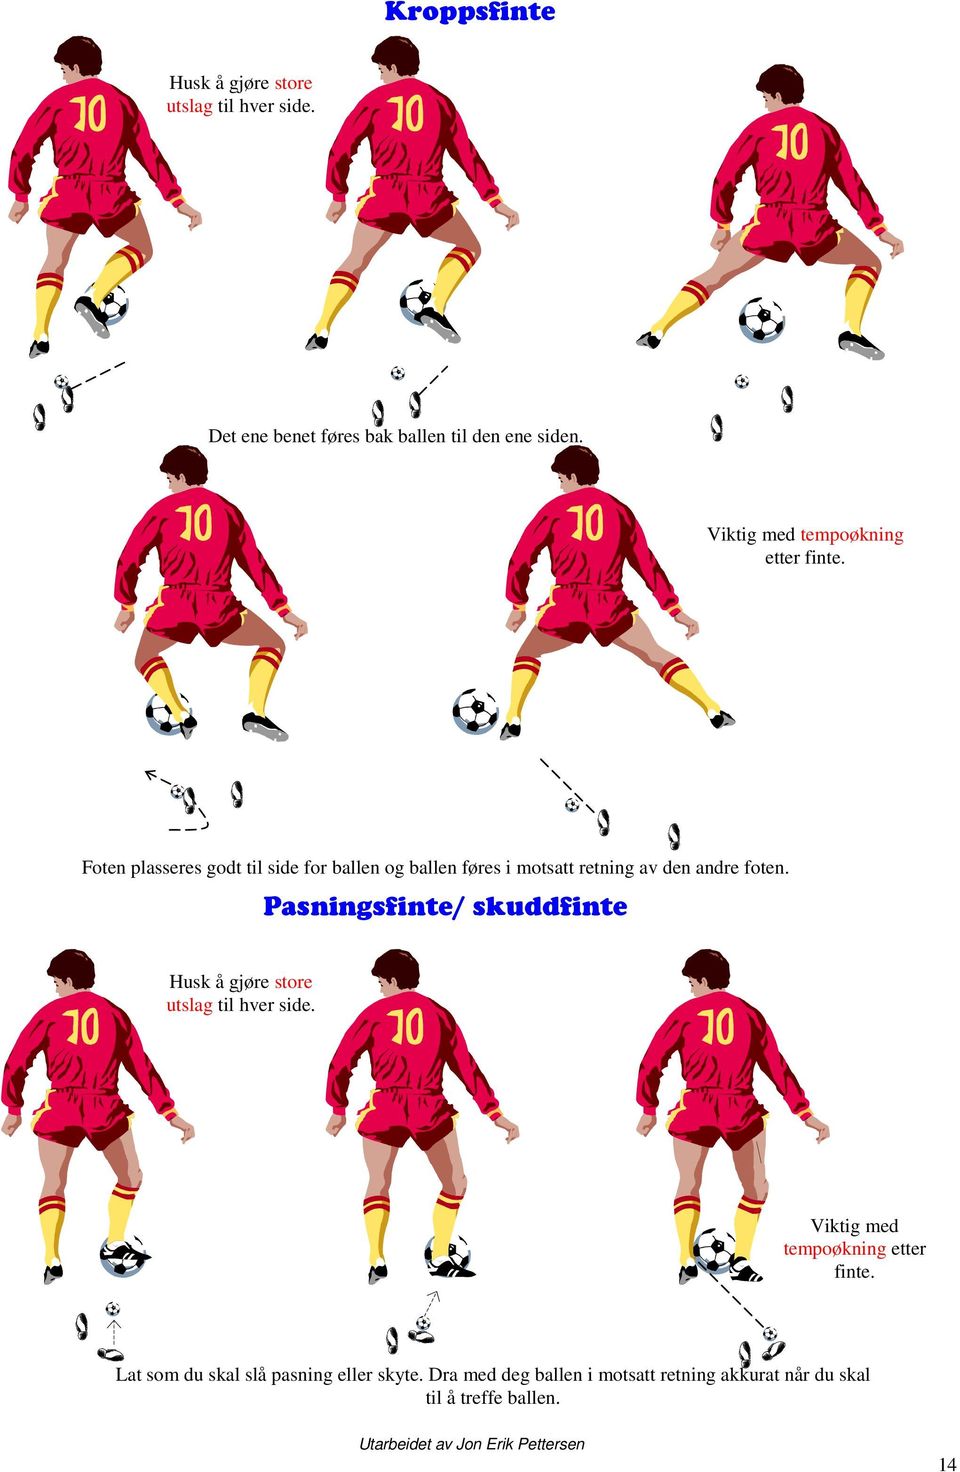 Foten plasseres godt til side for ballen og ballen føres i motsatt retning av den andre foten.